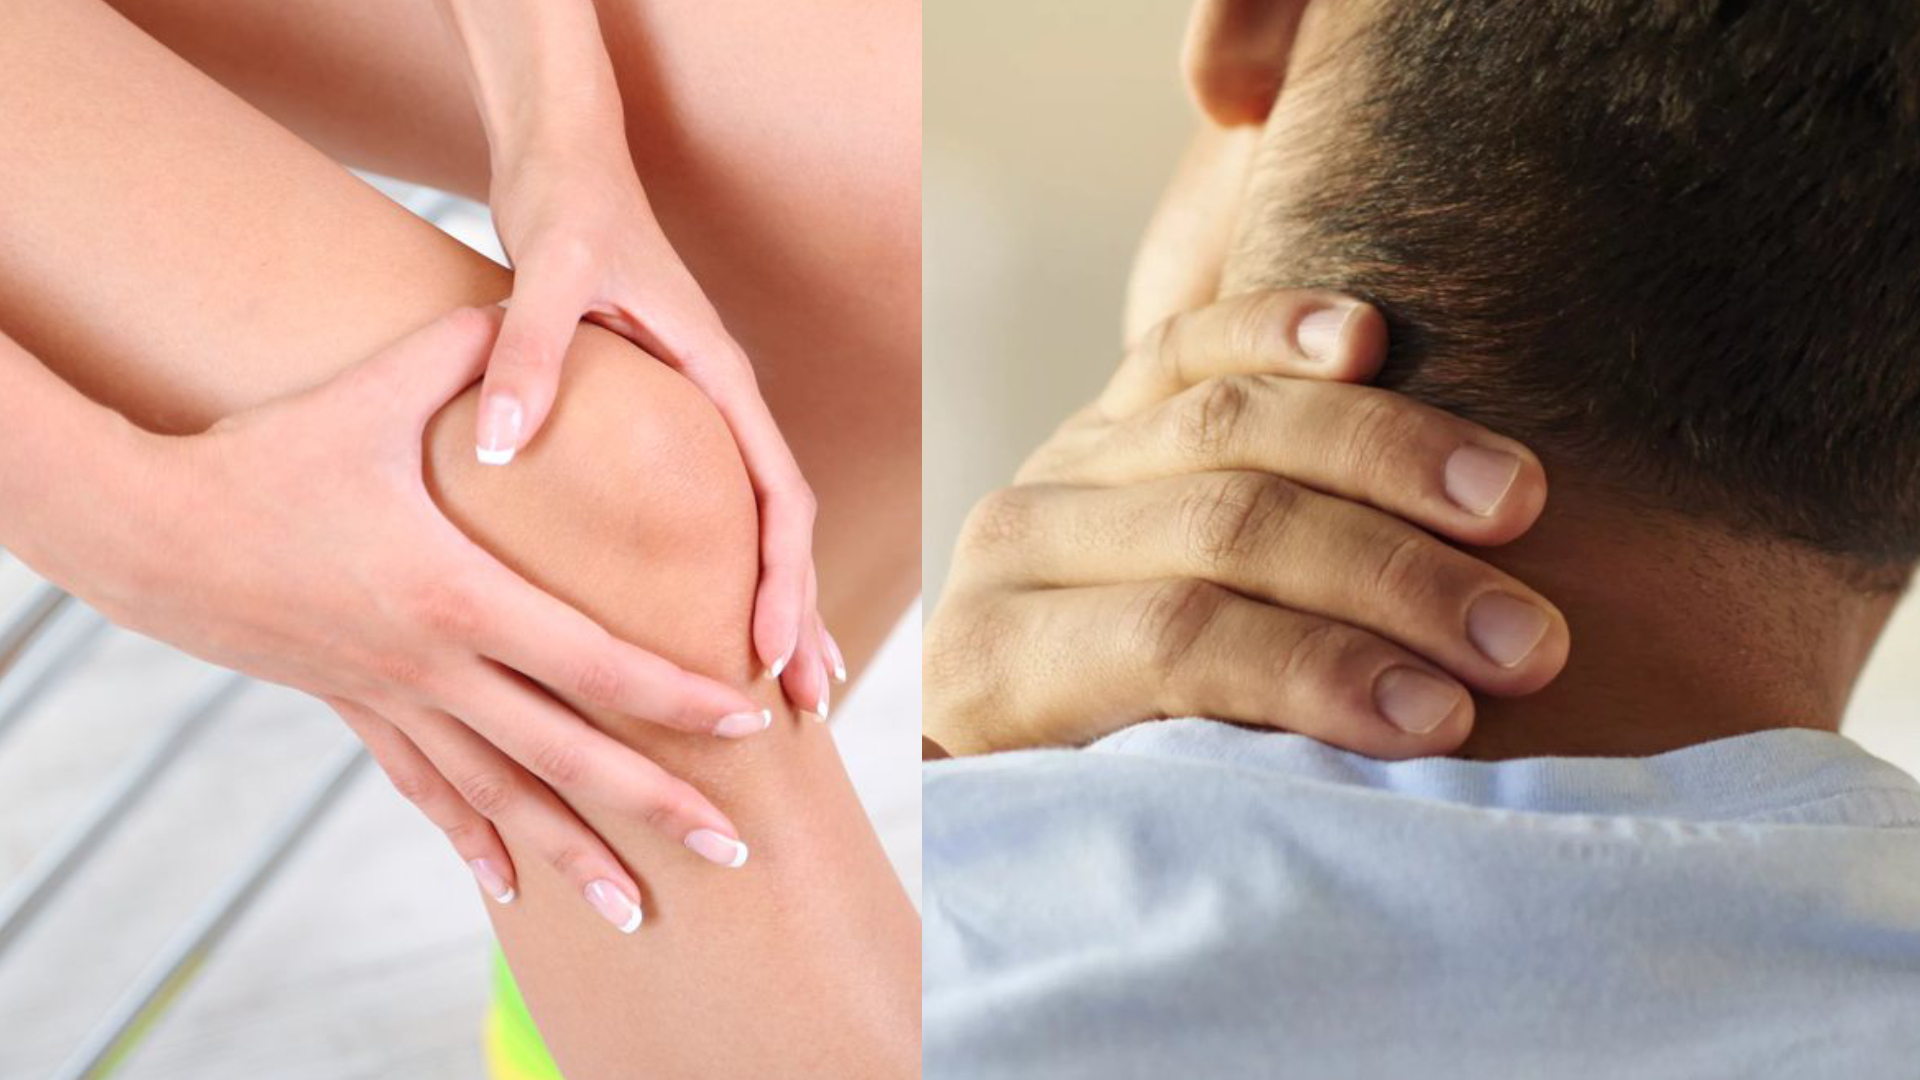 Health Tips: आपकी ये 5 गलतियां जोड़ों और कंधे के दर्द की बनती हैं वजह, आप भी करते हैं ऐसा तो हो जाइए सावधान